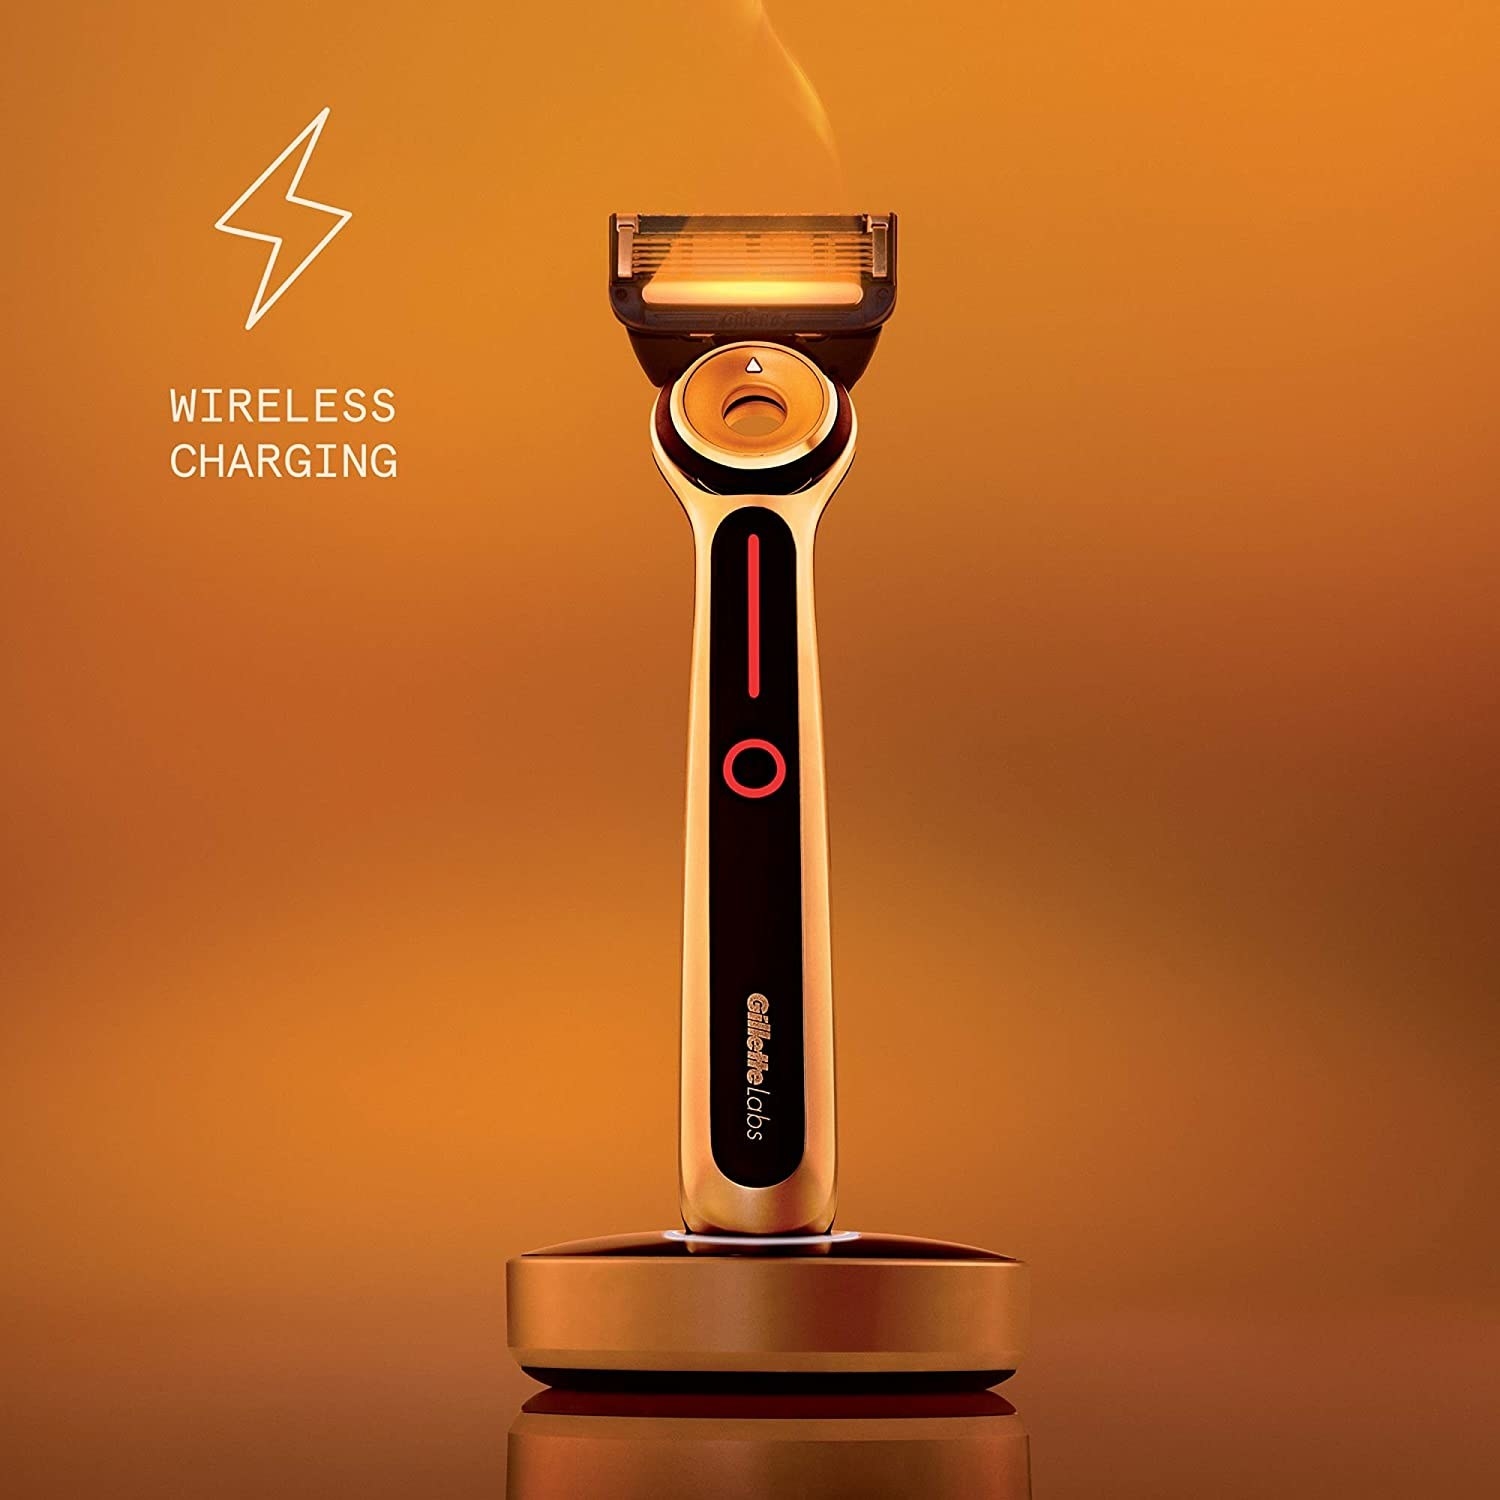 The wireless charging razor